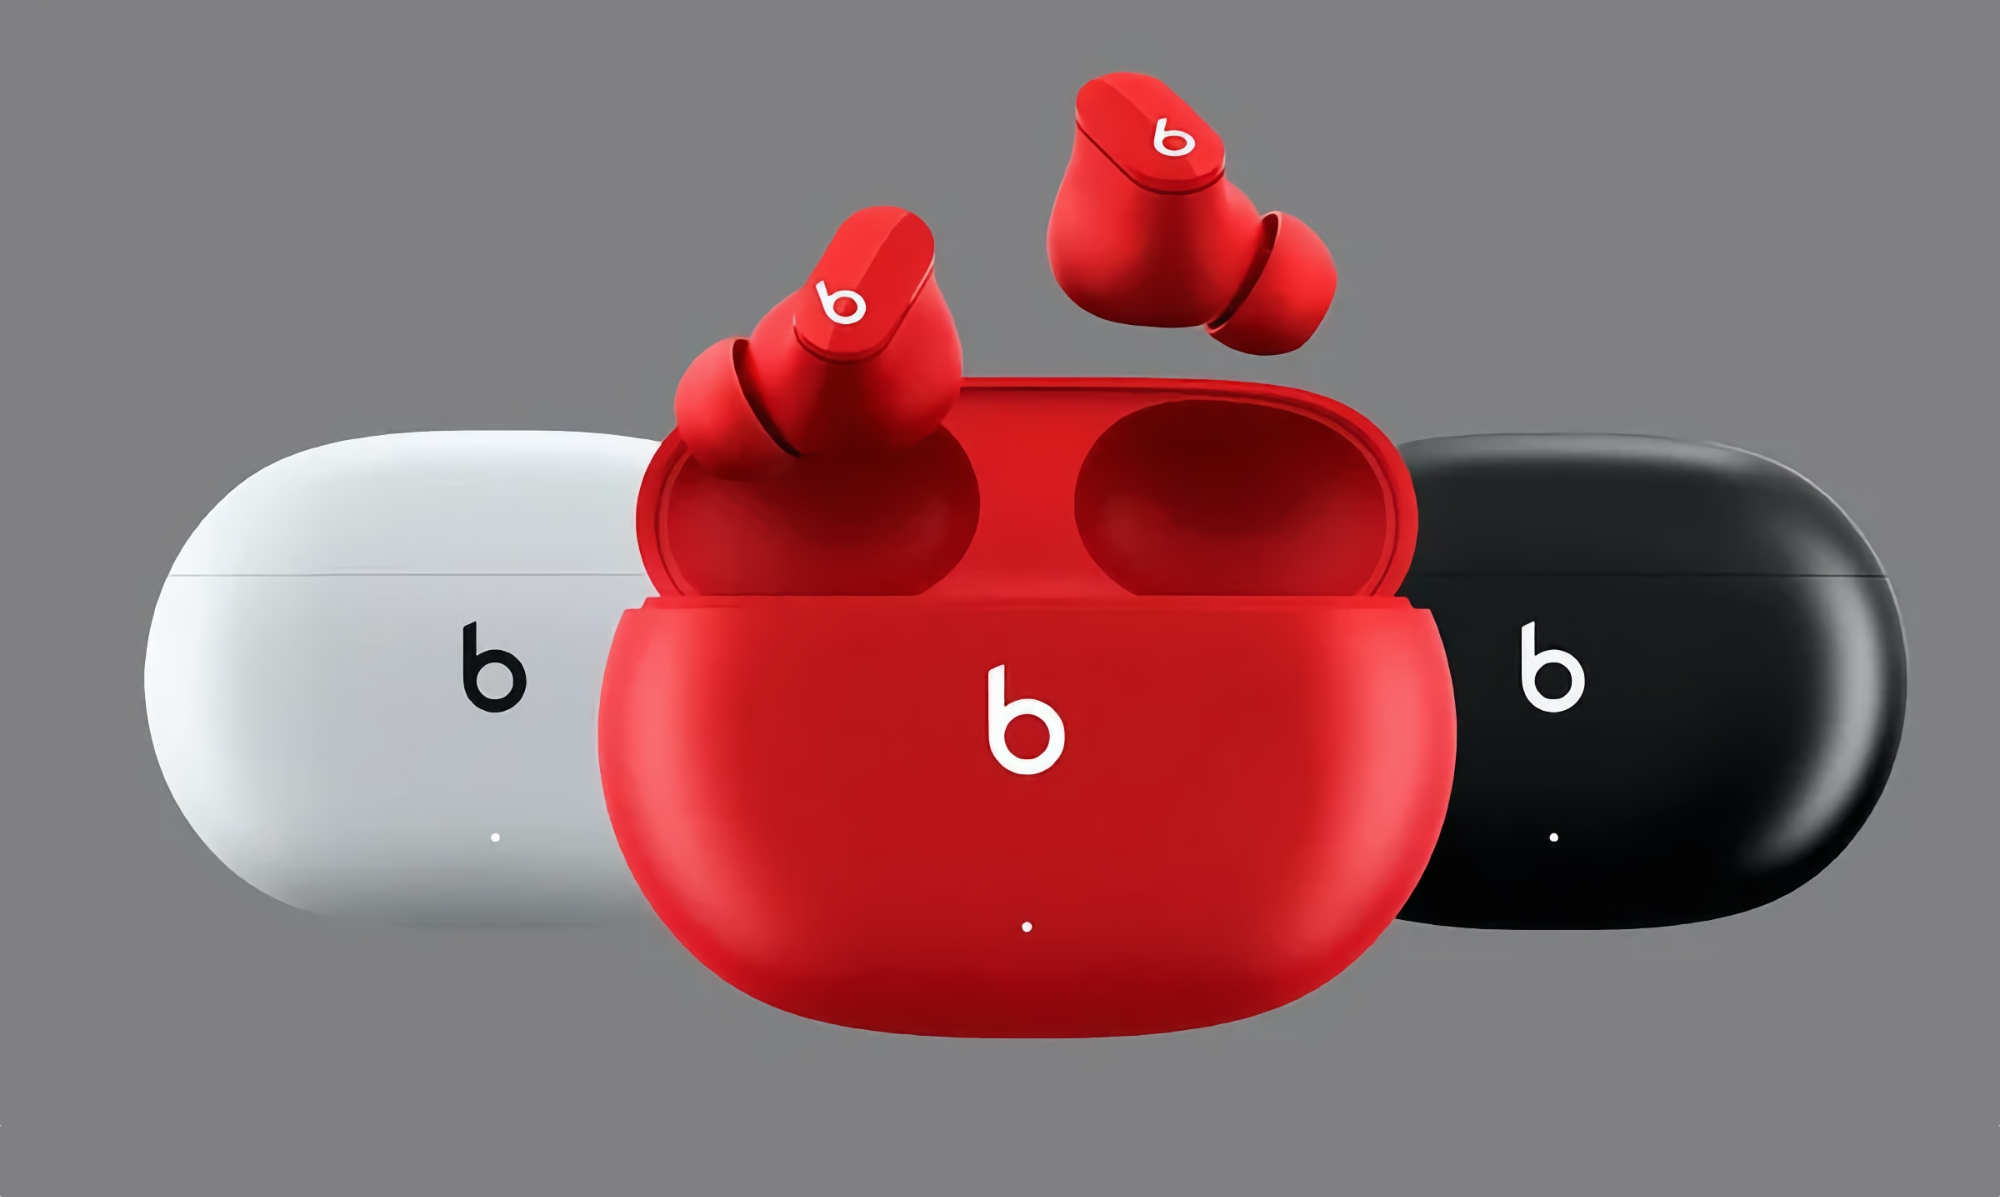 Les Beats Studio Buds bénéficient de nouvelles fonctionnalités avec la mise à jour du micrologiciel